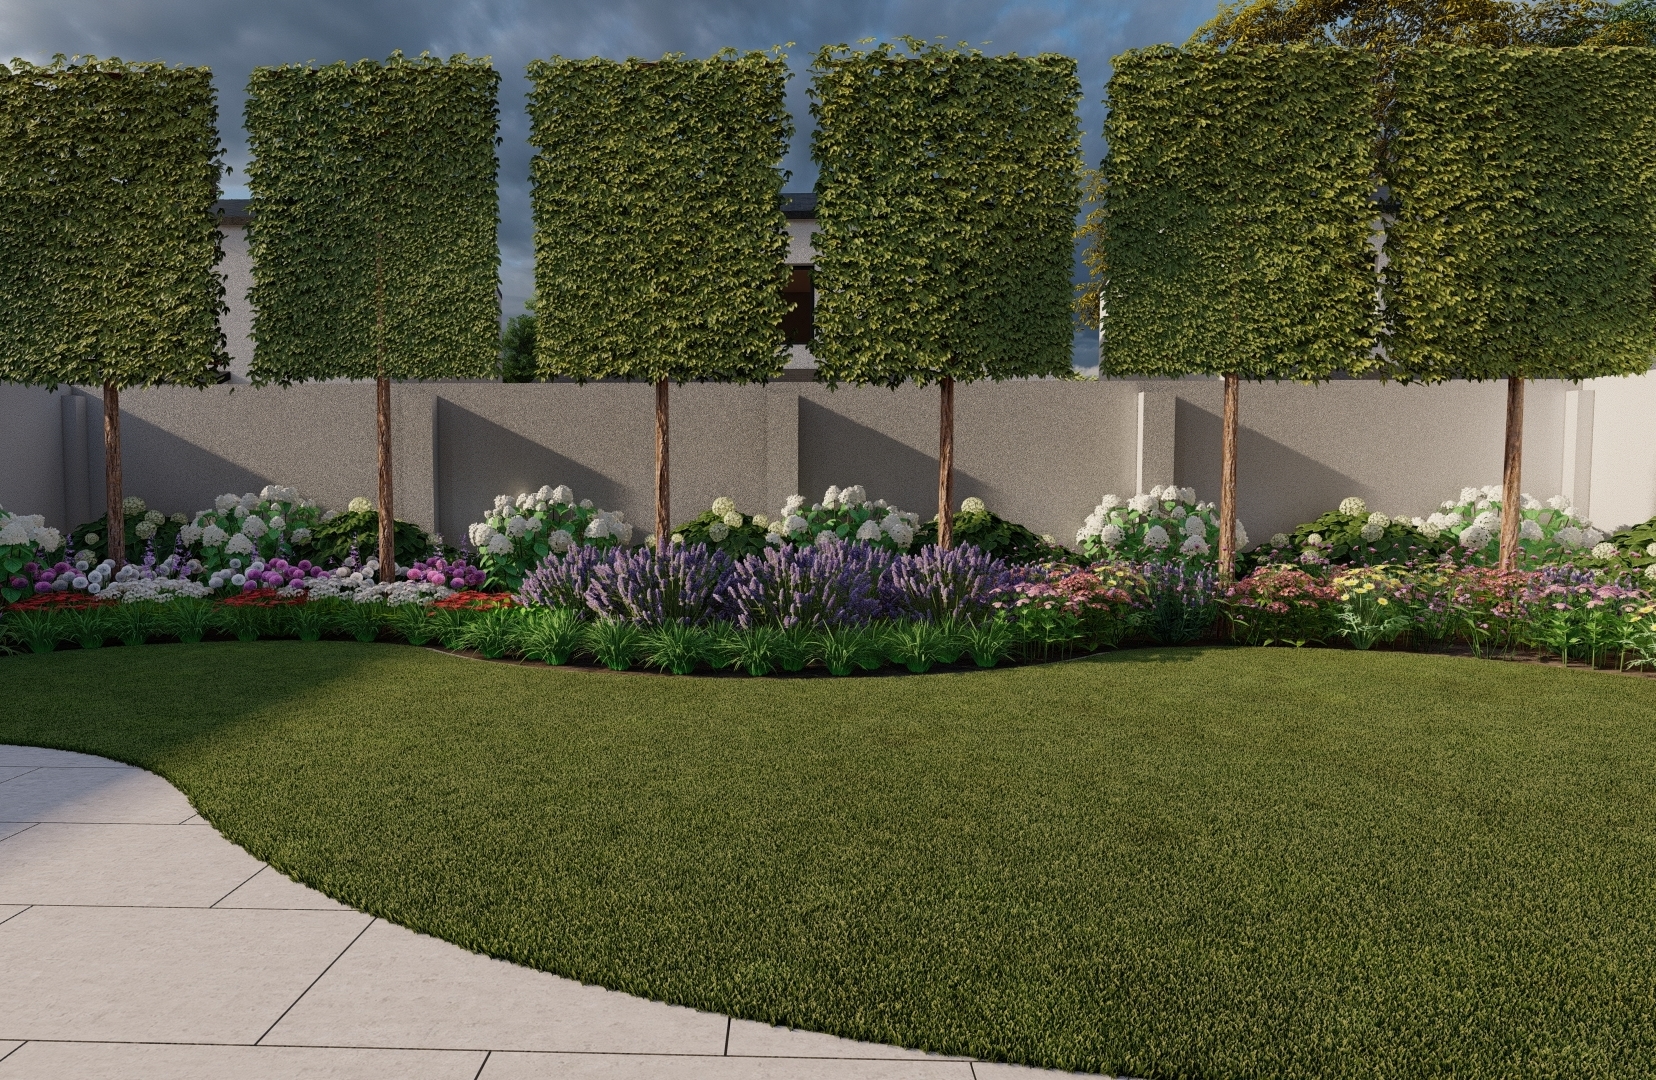 Design Visuals for a Family Garden in Malahide, Co Dublin